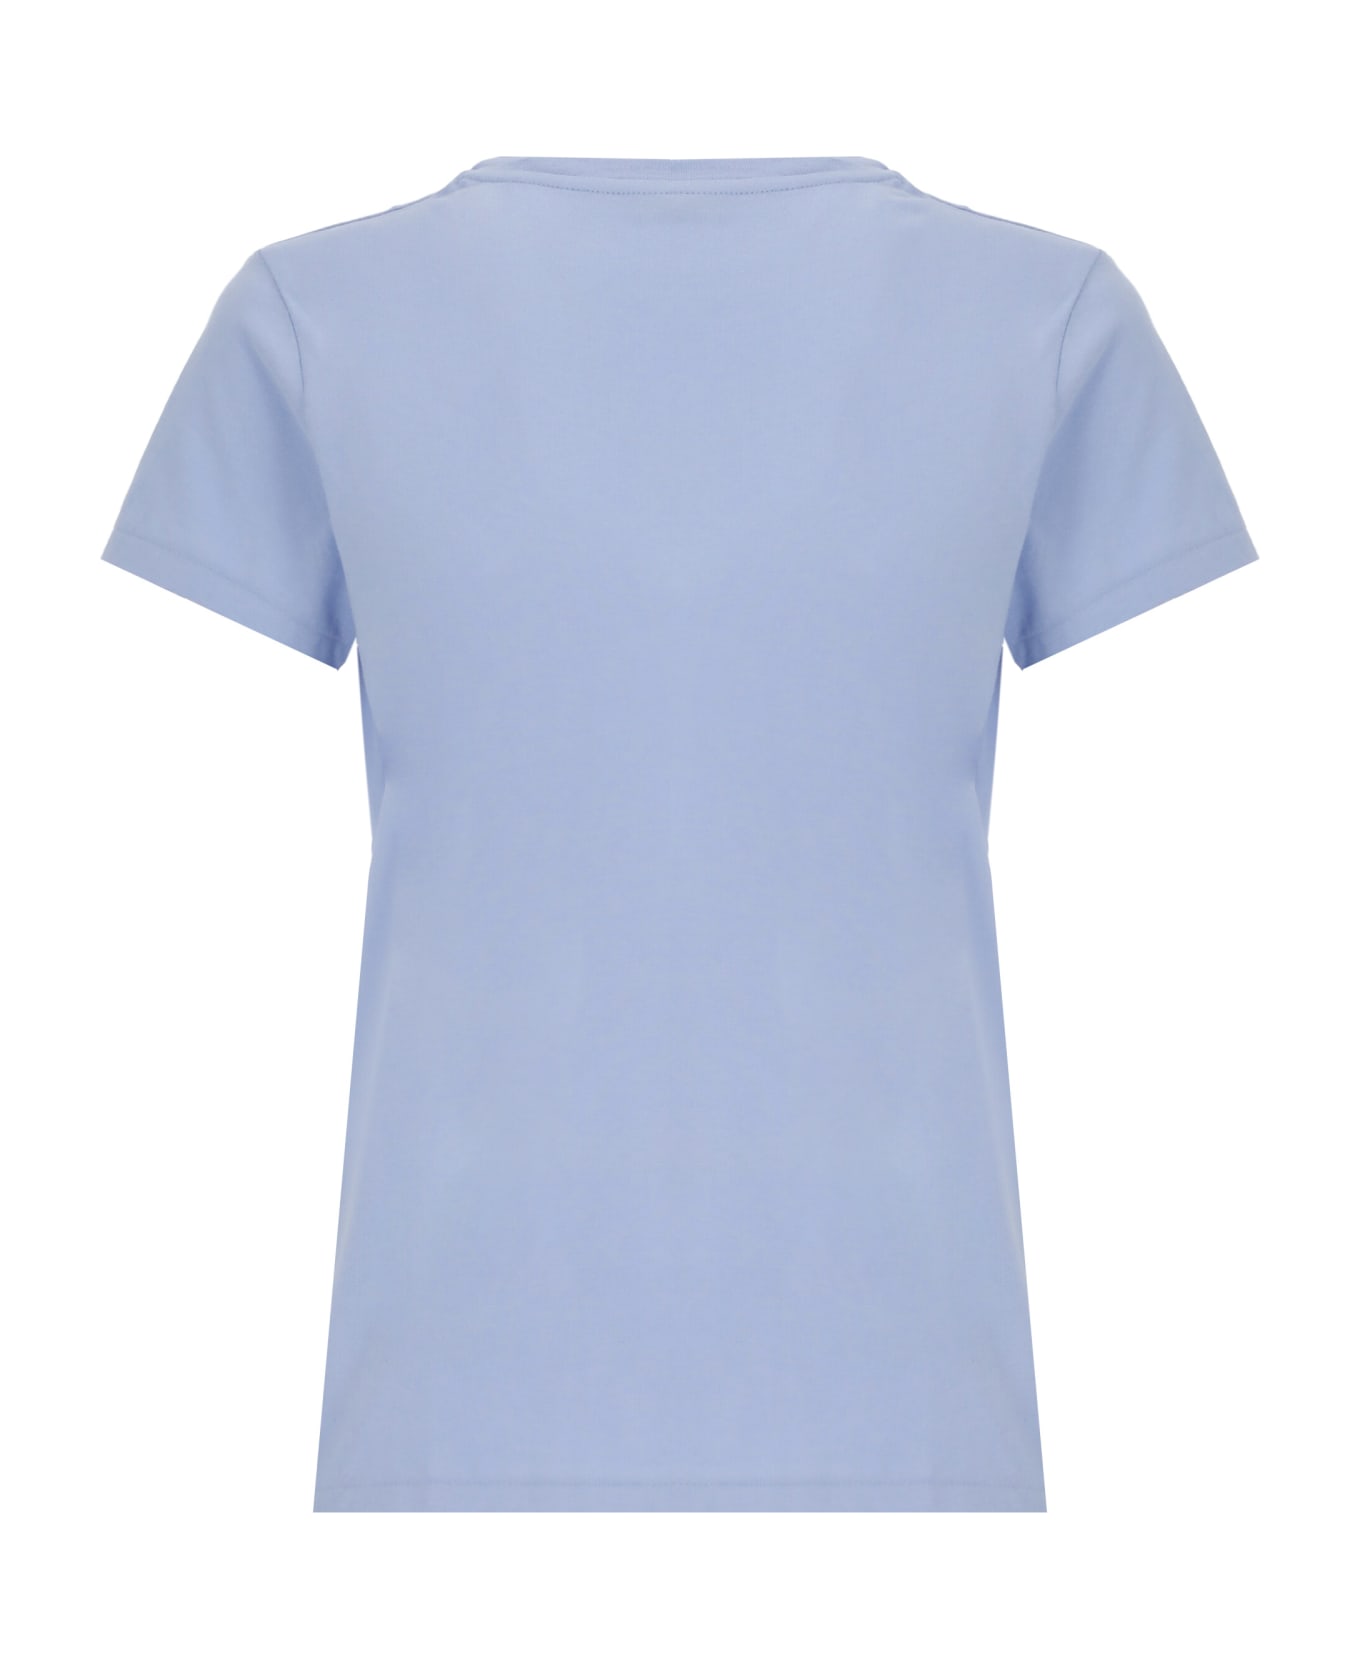 Ralph Lauren T-shirt With Pony - Dress Shirt Blue